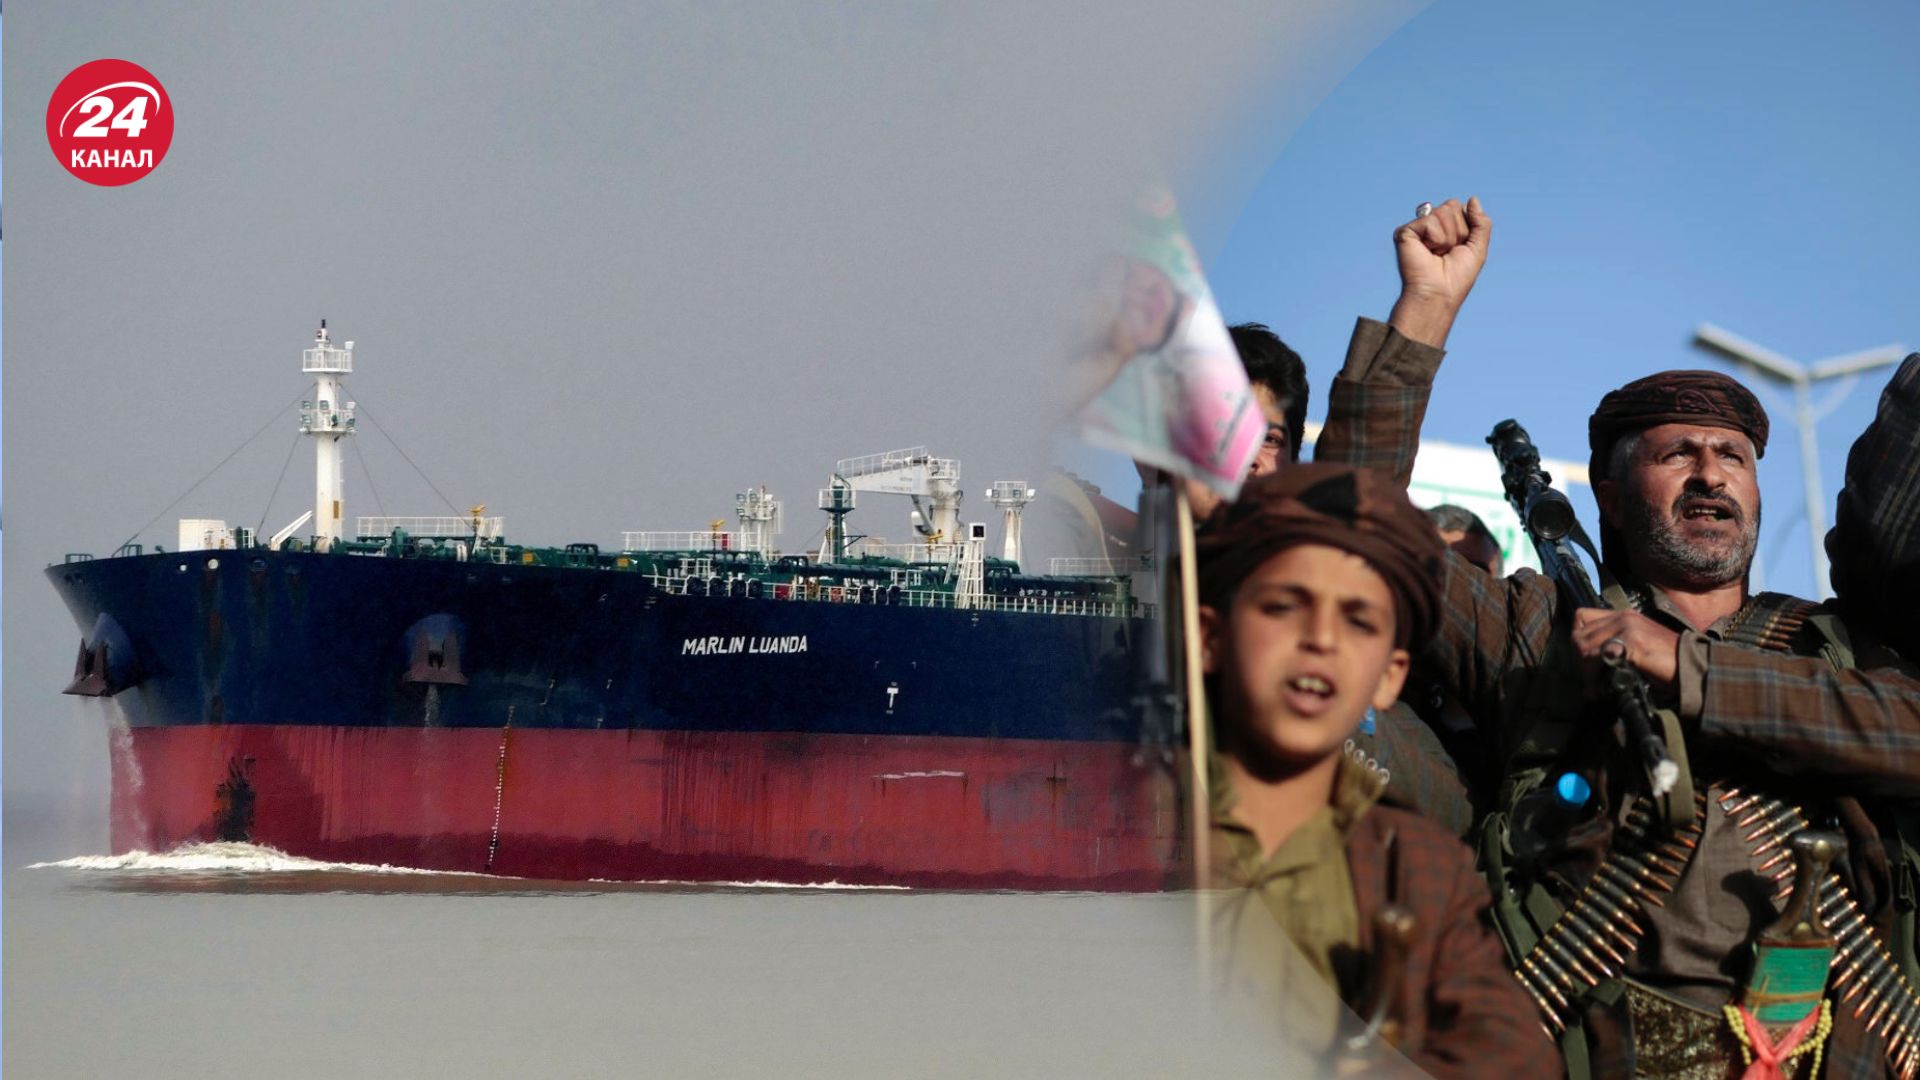 Хуситы атаковали нефтяной танкер 26 января